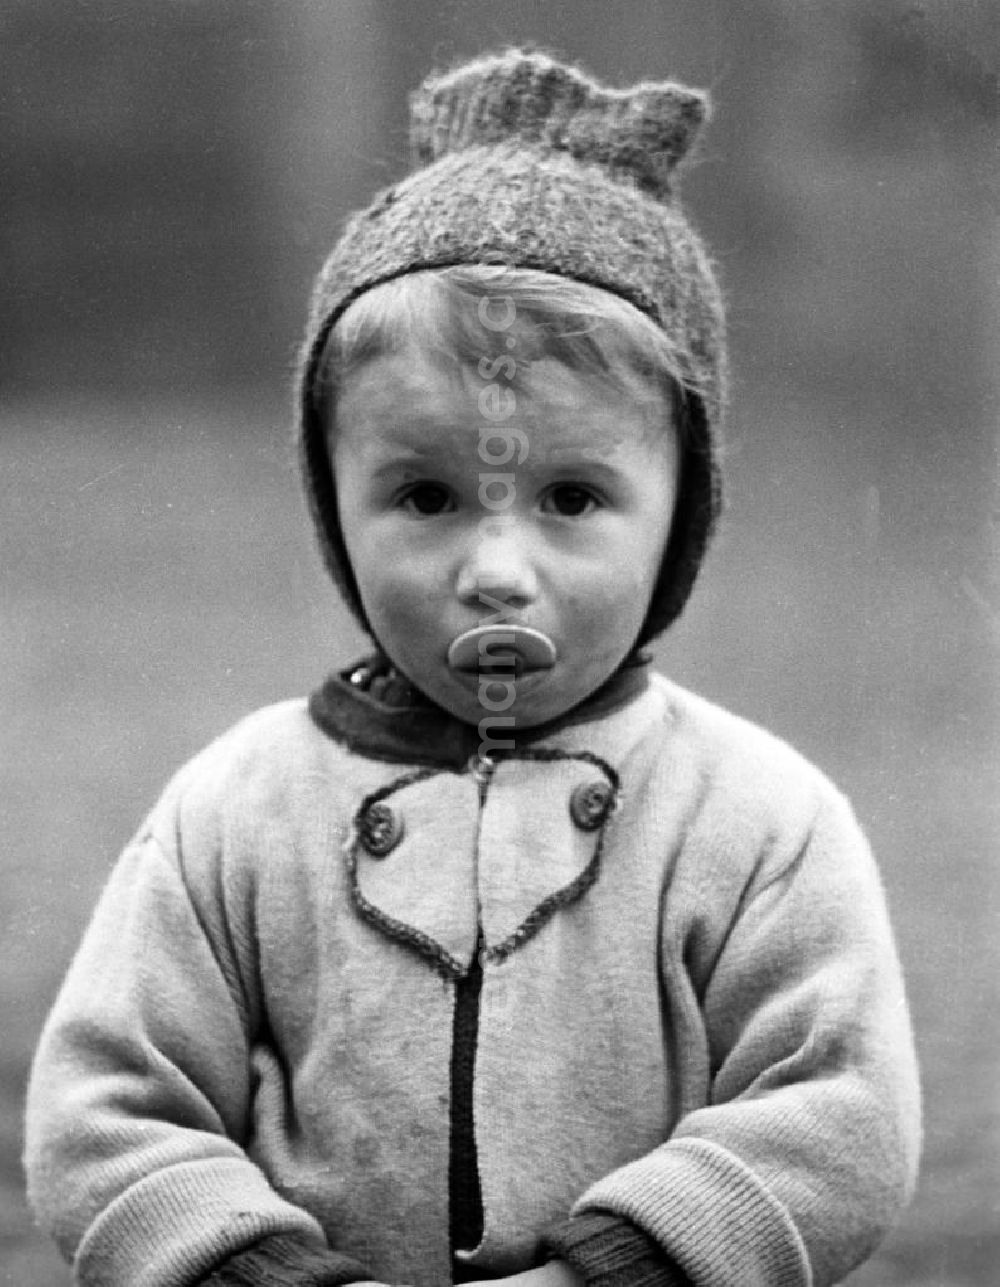 GDR image archive: Leipzig - Mit großen Augen schaut dieser kleine Junge - den Nuckel halb im Mund - in die Kamera des Fotografe.